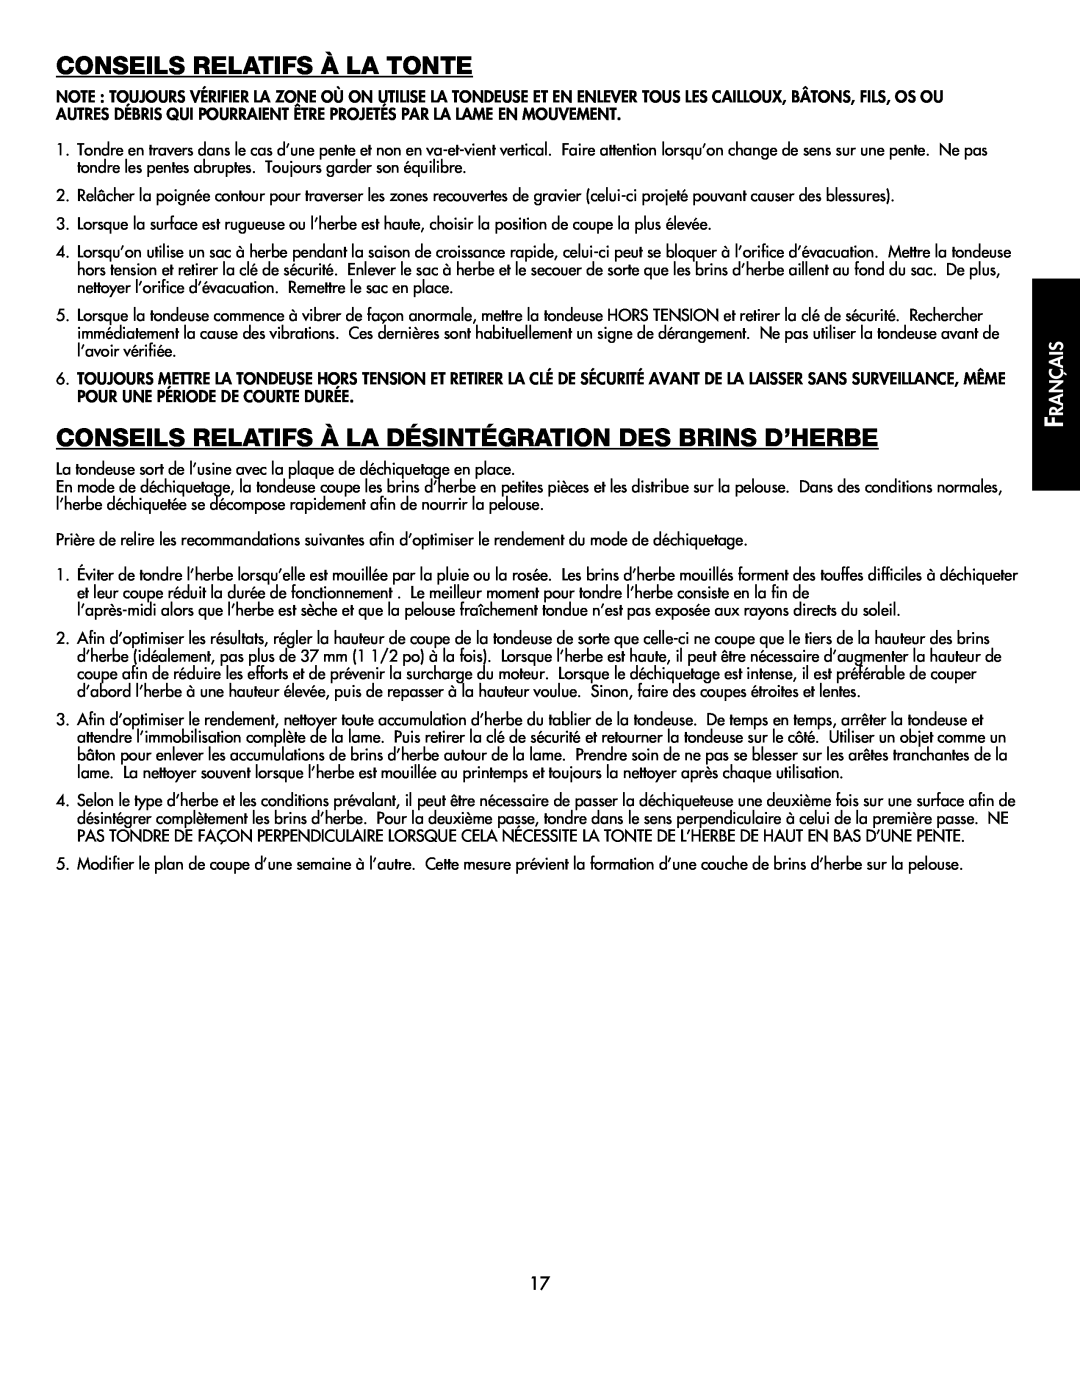 Black & Decker CMM1000 Conseils Relatifs À La Tonte, Conseils Relatifs À La Désintégration Des Brins D’Herbe, Français 